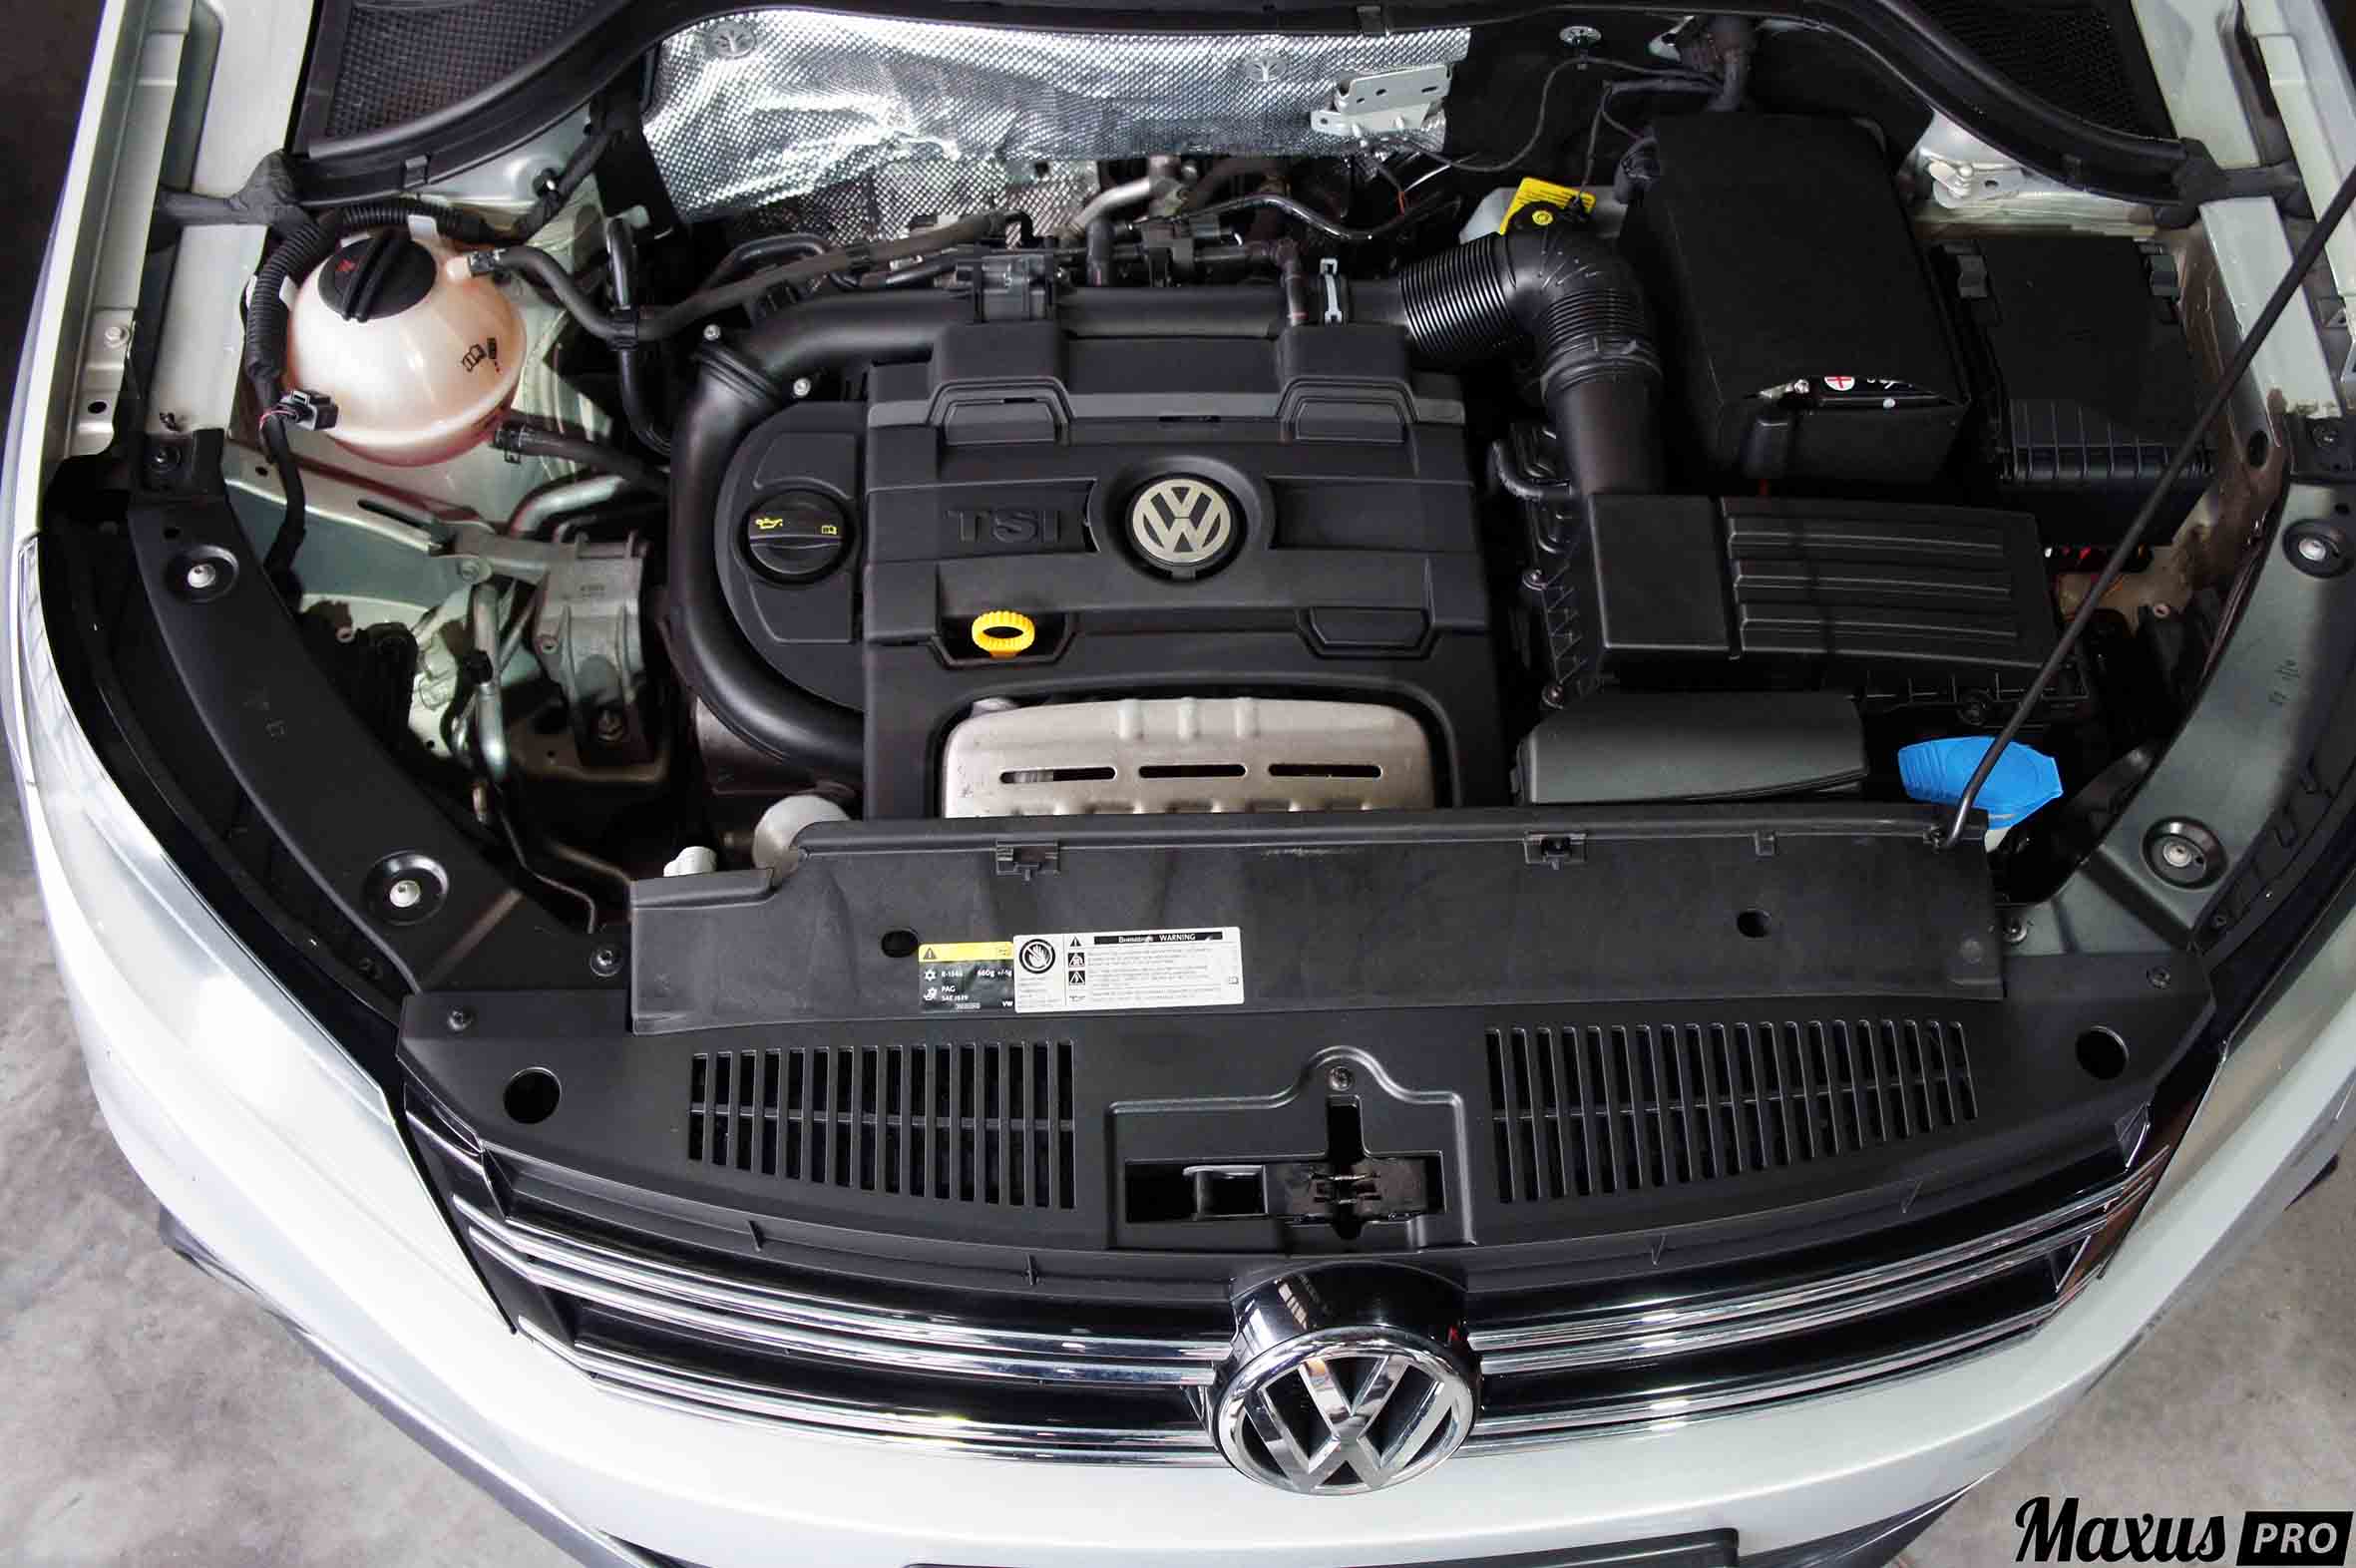 Двигатель тигуан 1.4 150. Двигатель Volkswagen Tiguan 1.4 TSI. Двигатель Фольксваген Тигуан 1.4. Тигуан 1.4 150 мотор. Мотор CTHA 1.4 TSI.